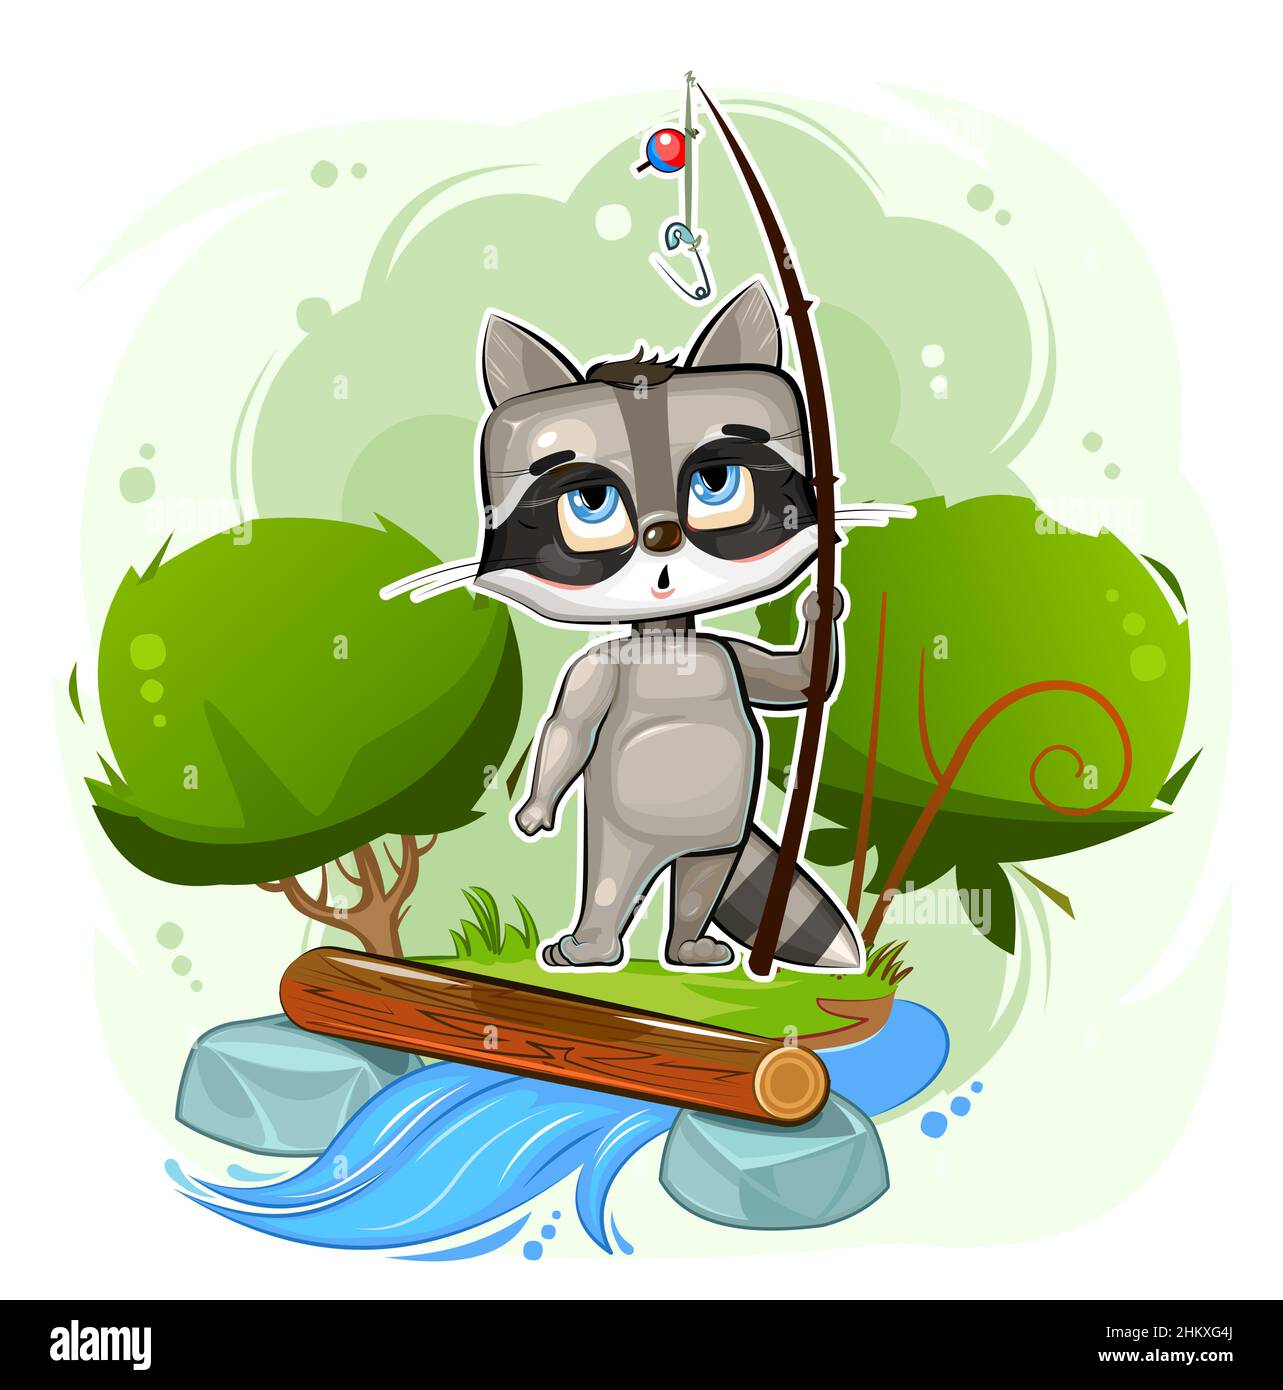 Divertente e carino Raccoon bambino è la pesca sulla riva del flusso. Fiume. Non viene catturato pesce. Bambino animale ingenuo. Stile cartoon. Illustrazione per i bambini Illustrazione Vettoriale